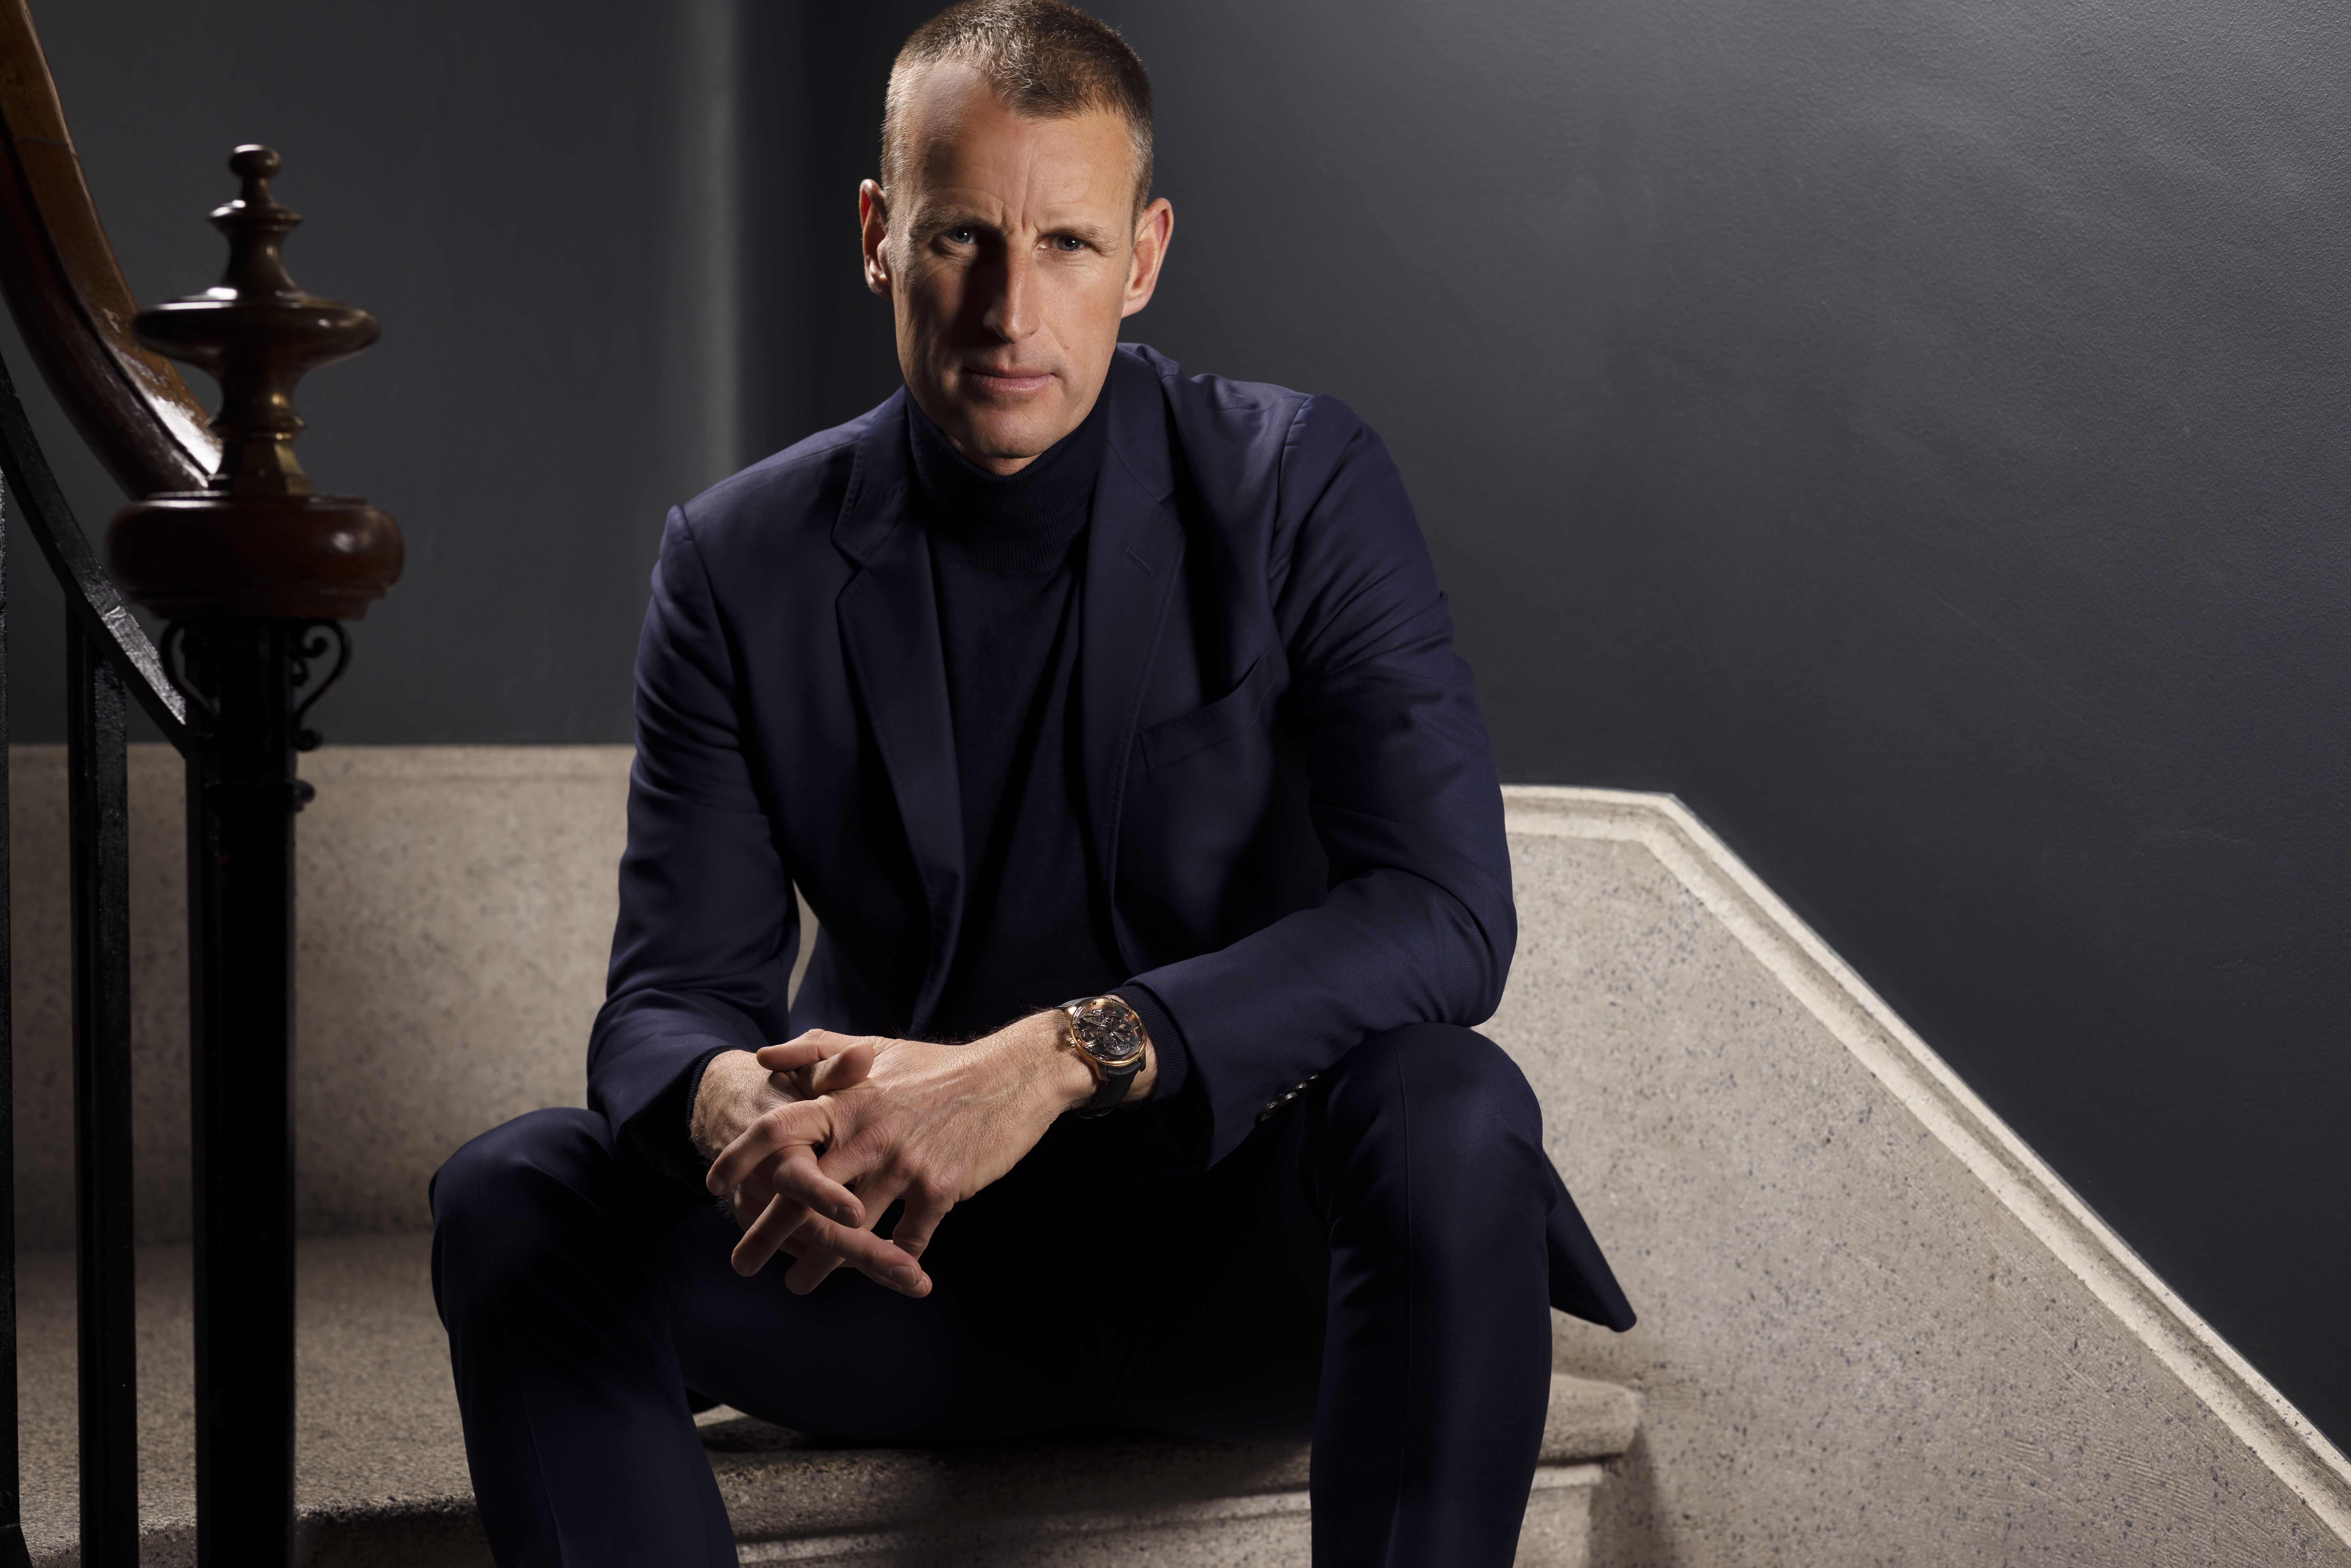 С 2018 года француз Патрик Прюньо возглавляет два элитных швейцарских часовых бренда – Girard-Perregaux и Ulysse Nardin.